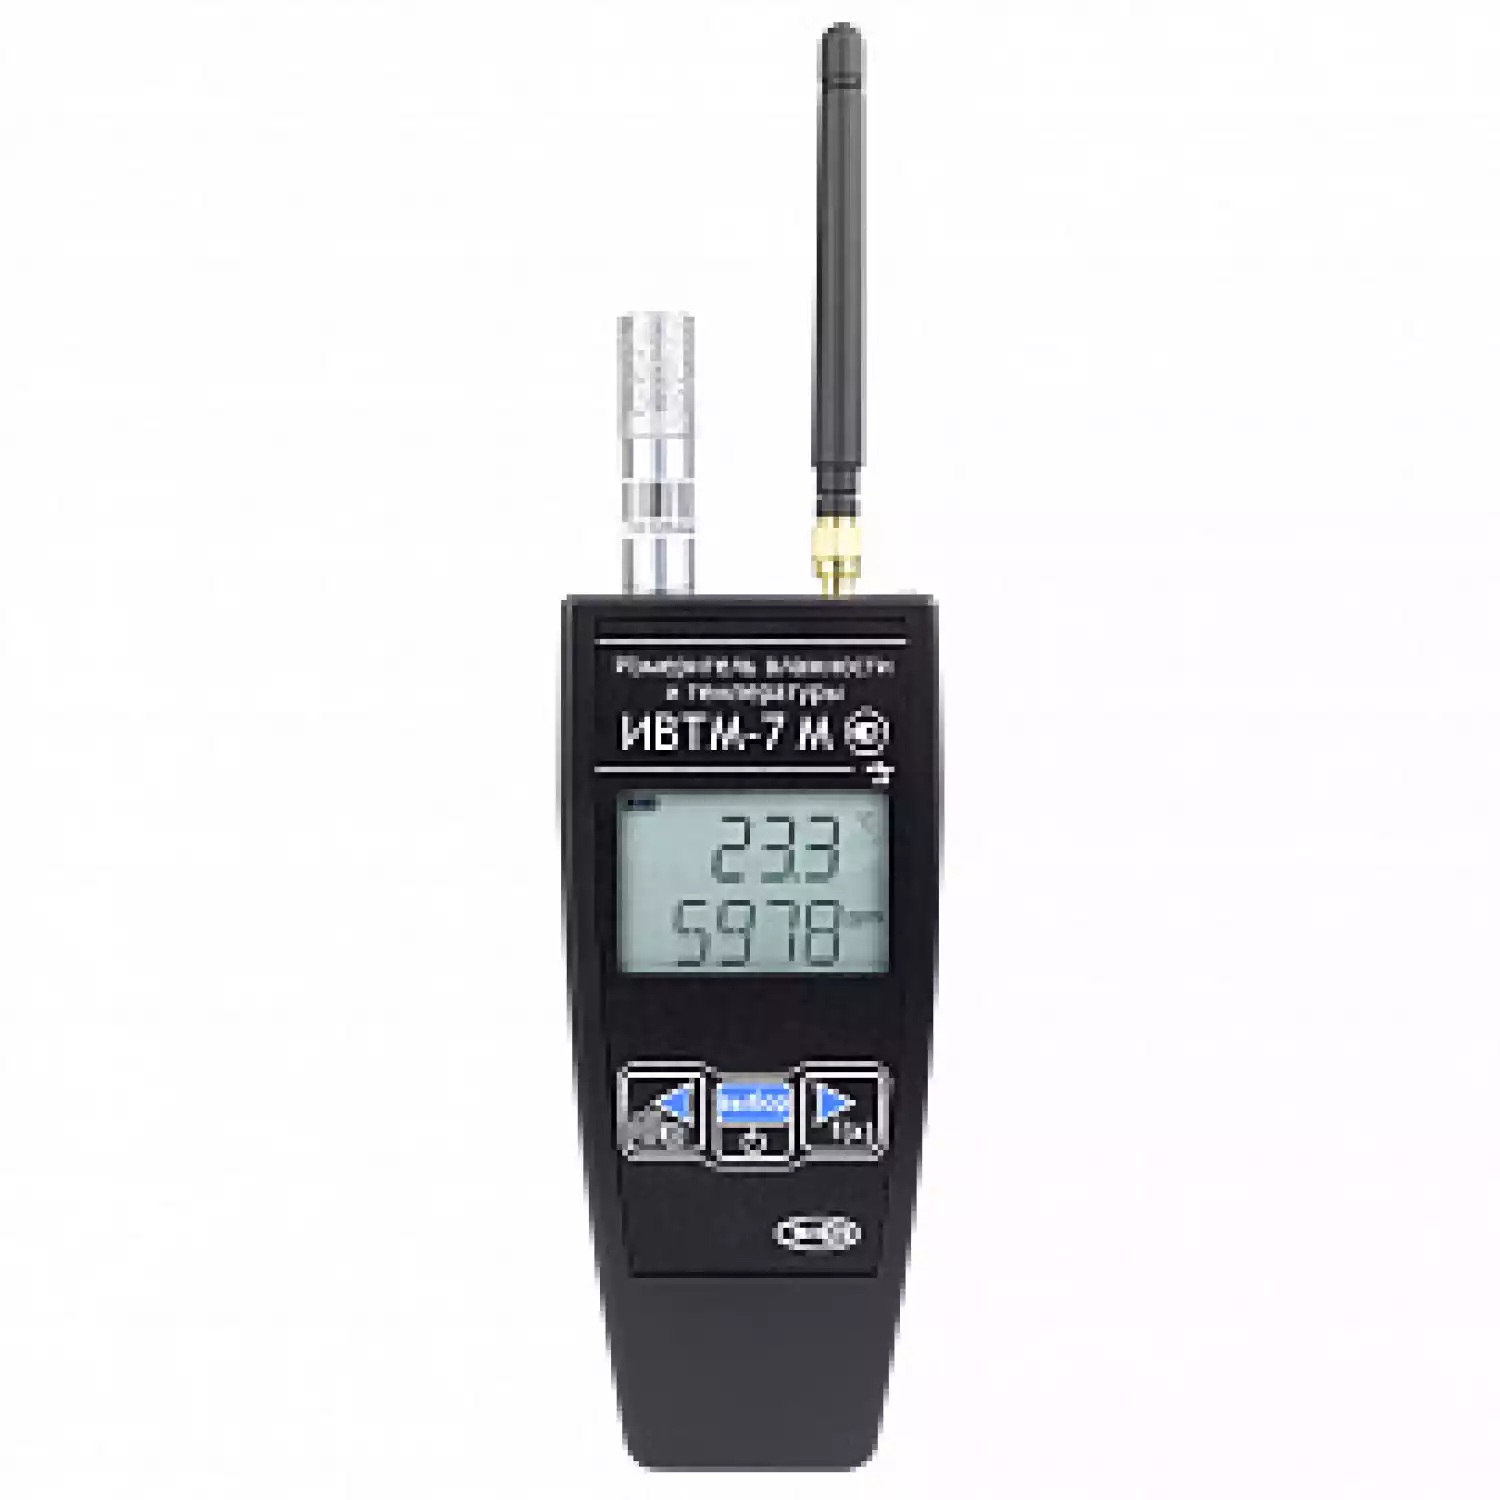 Термогигрометр ИВТМ-7 М 4-Д-1 для фармацевтических складов - 1